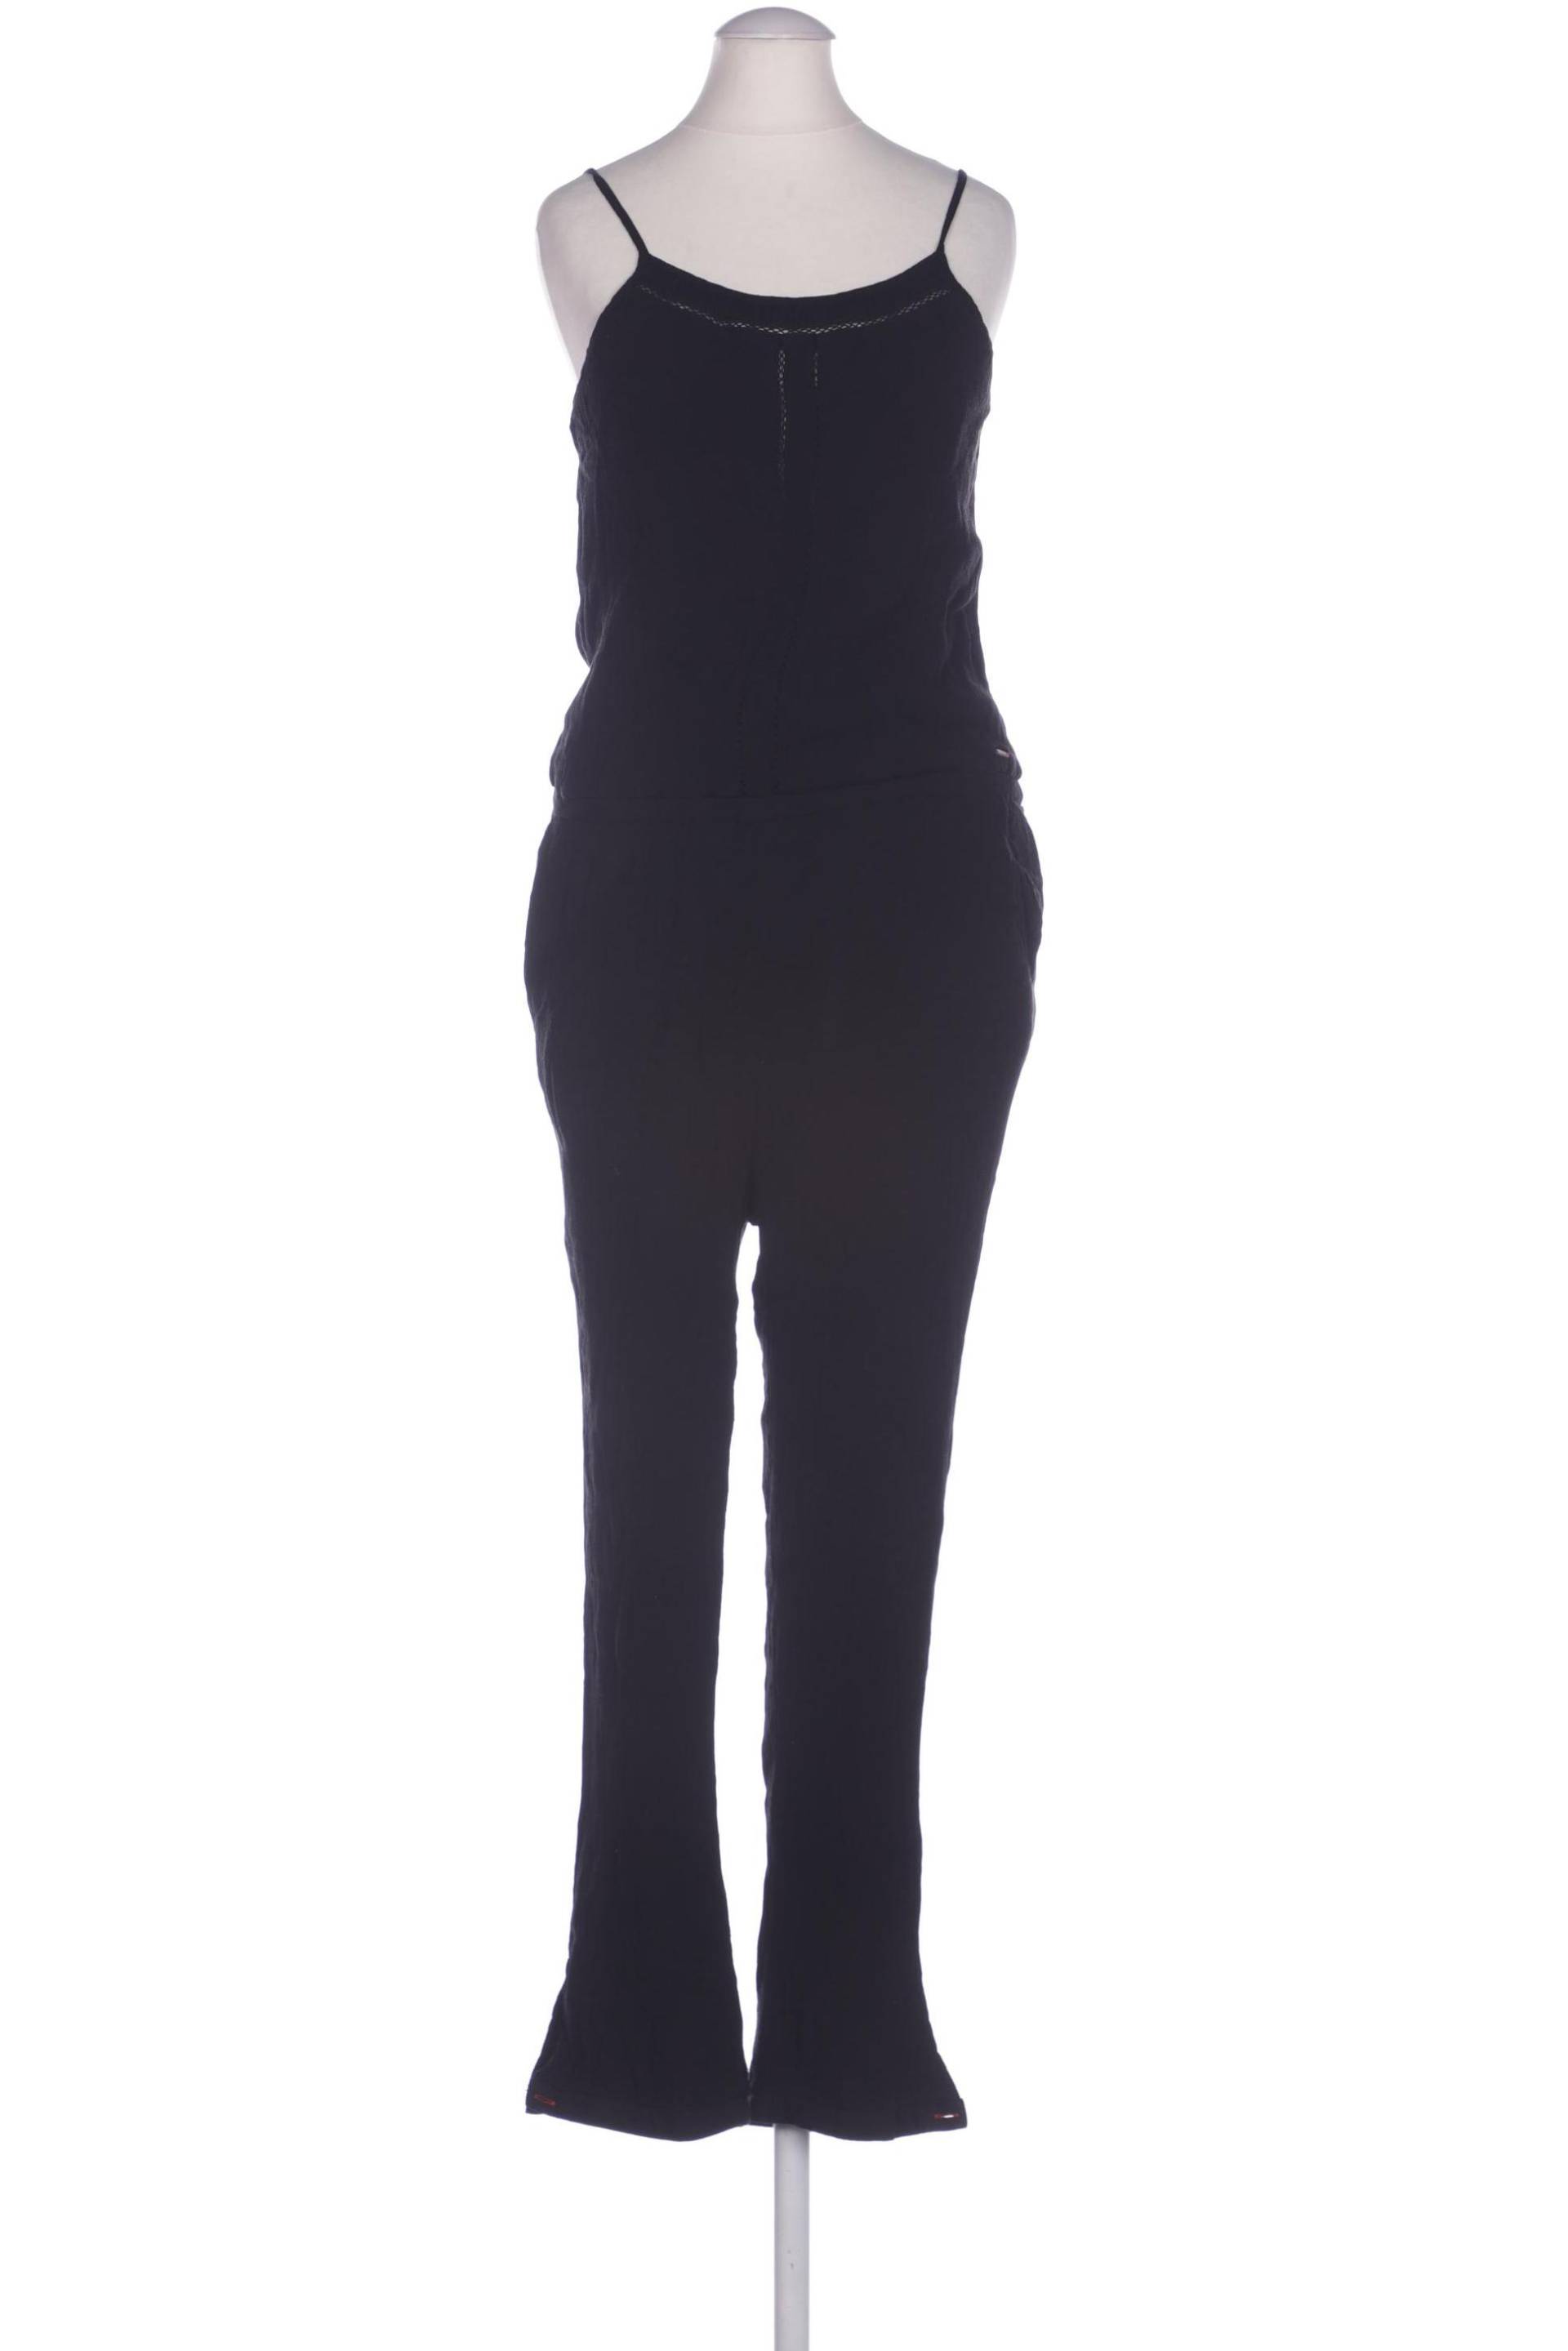 Hilfiger Denim Damen Jumpsuit/Overall, schwarz, Gr. 36 von Hilfiger Denim